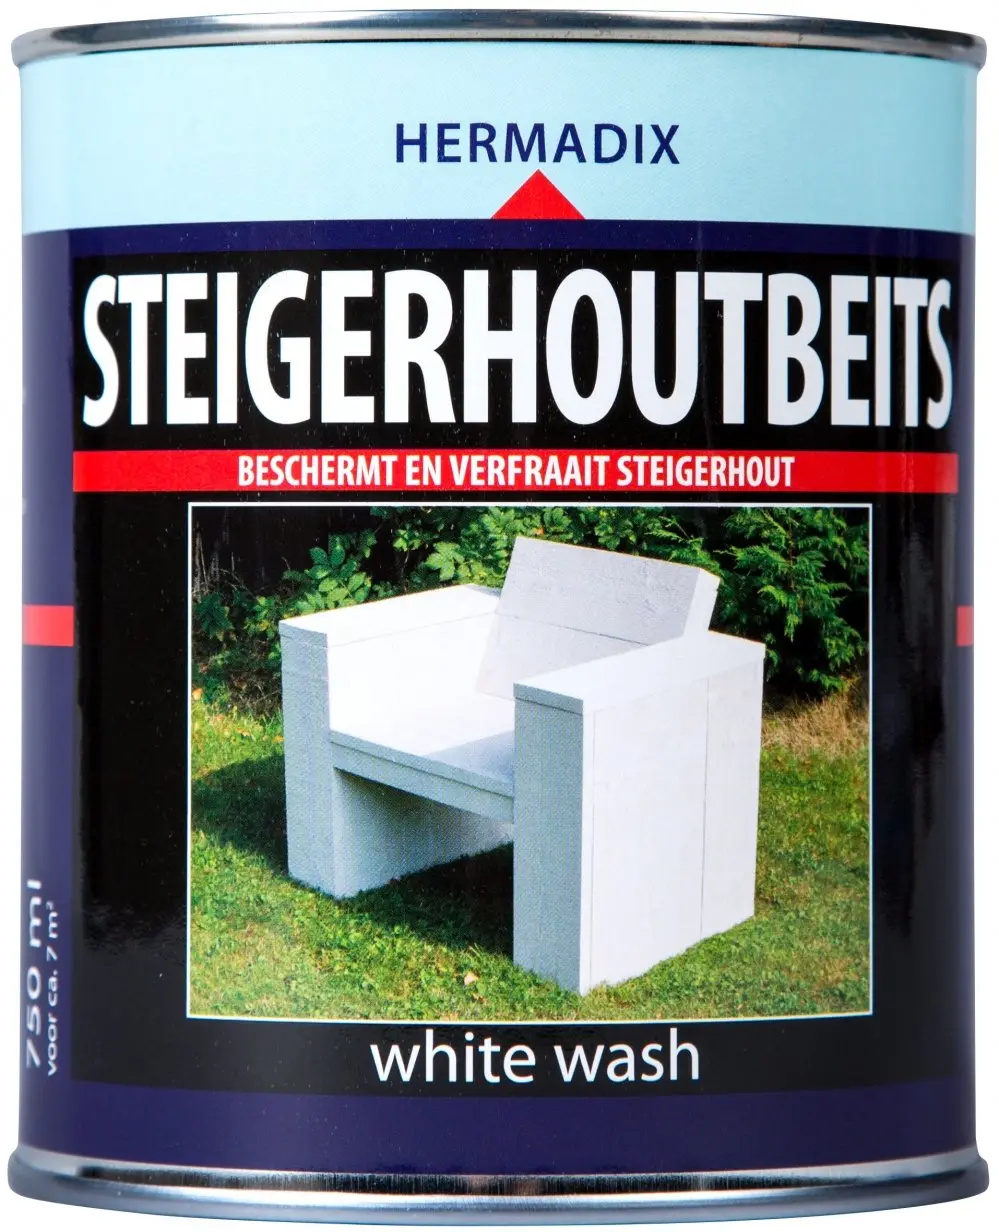 Hermadix - Steigerhoutbeits%20-%20White%20wash-1